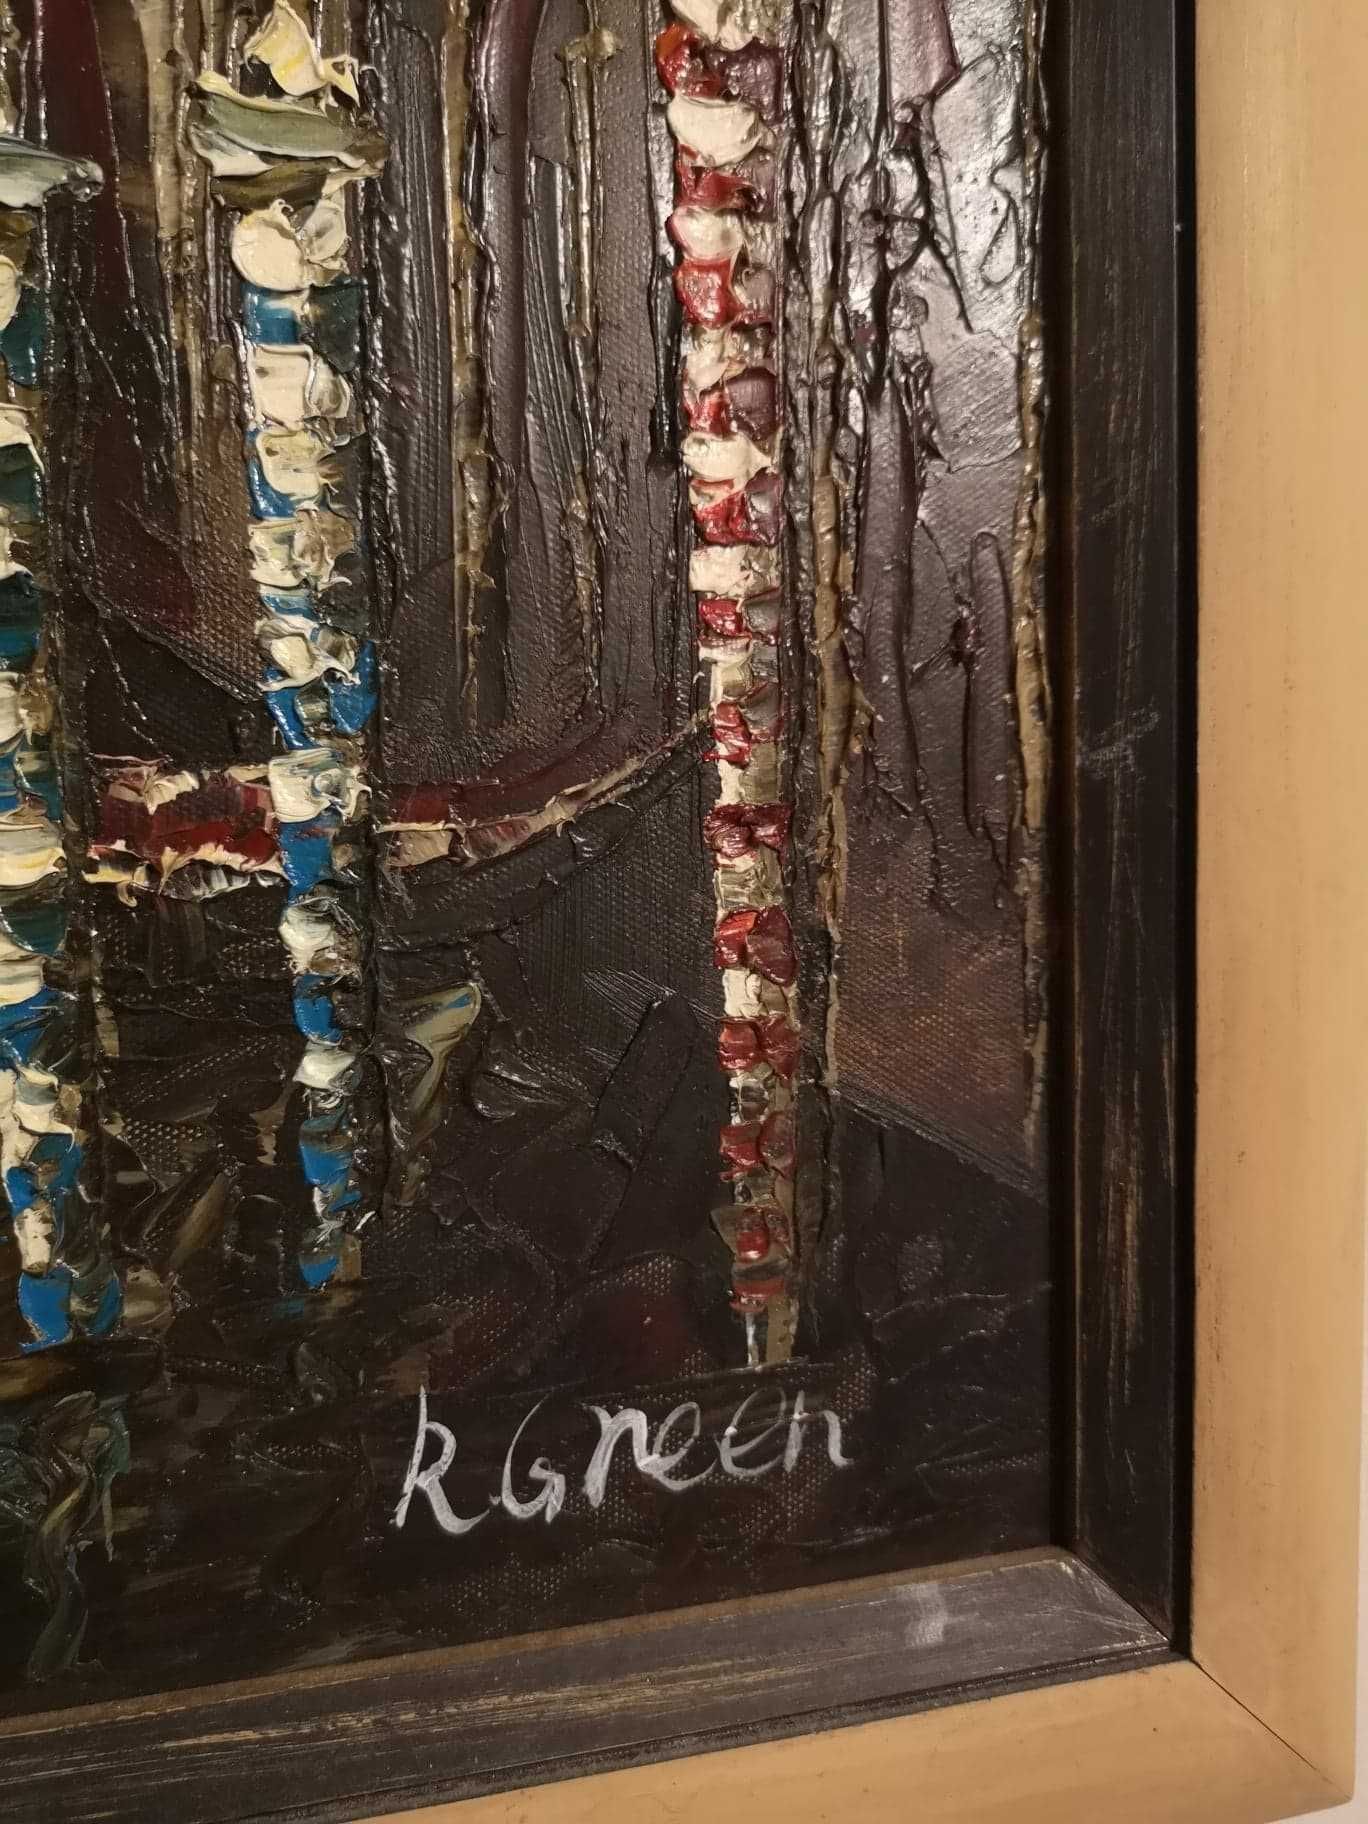 Obraz olejny na płótnie - Wenecja. 61 cm x 50 cm